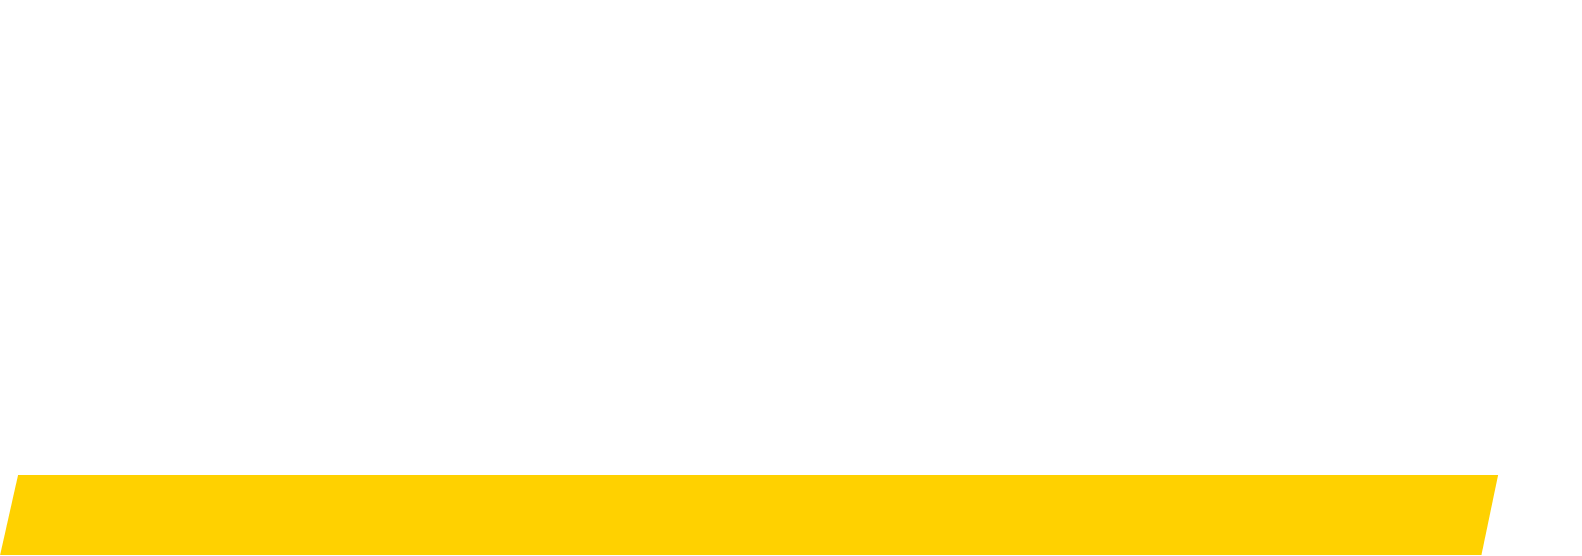 Hertz logo for dark backgrounds (transparent PNG)